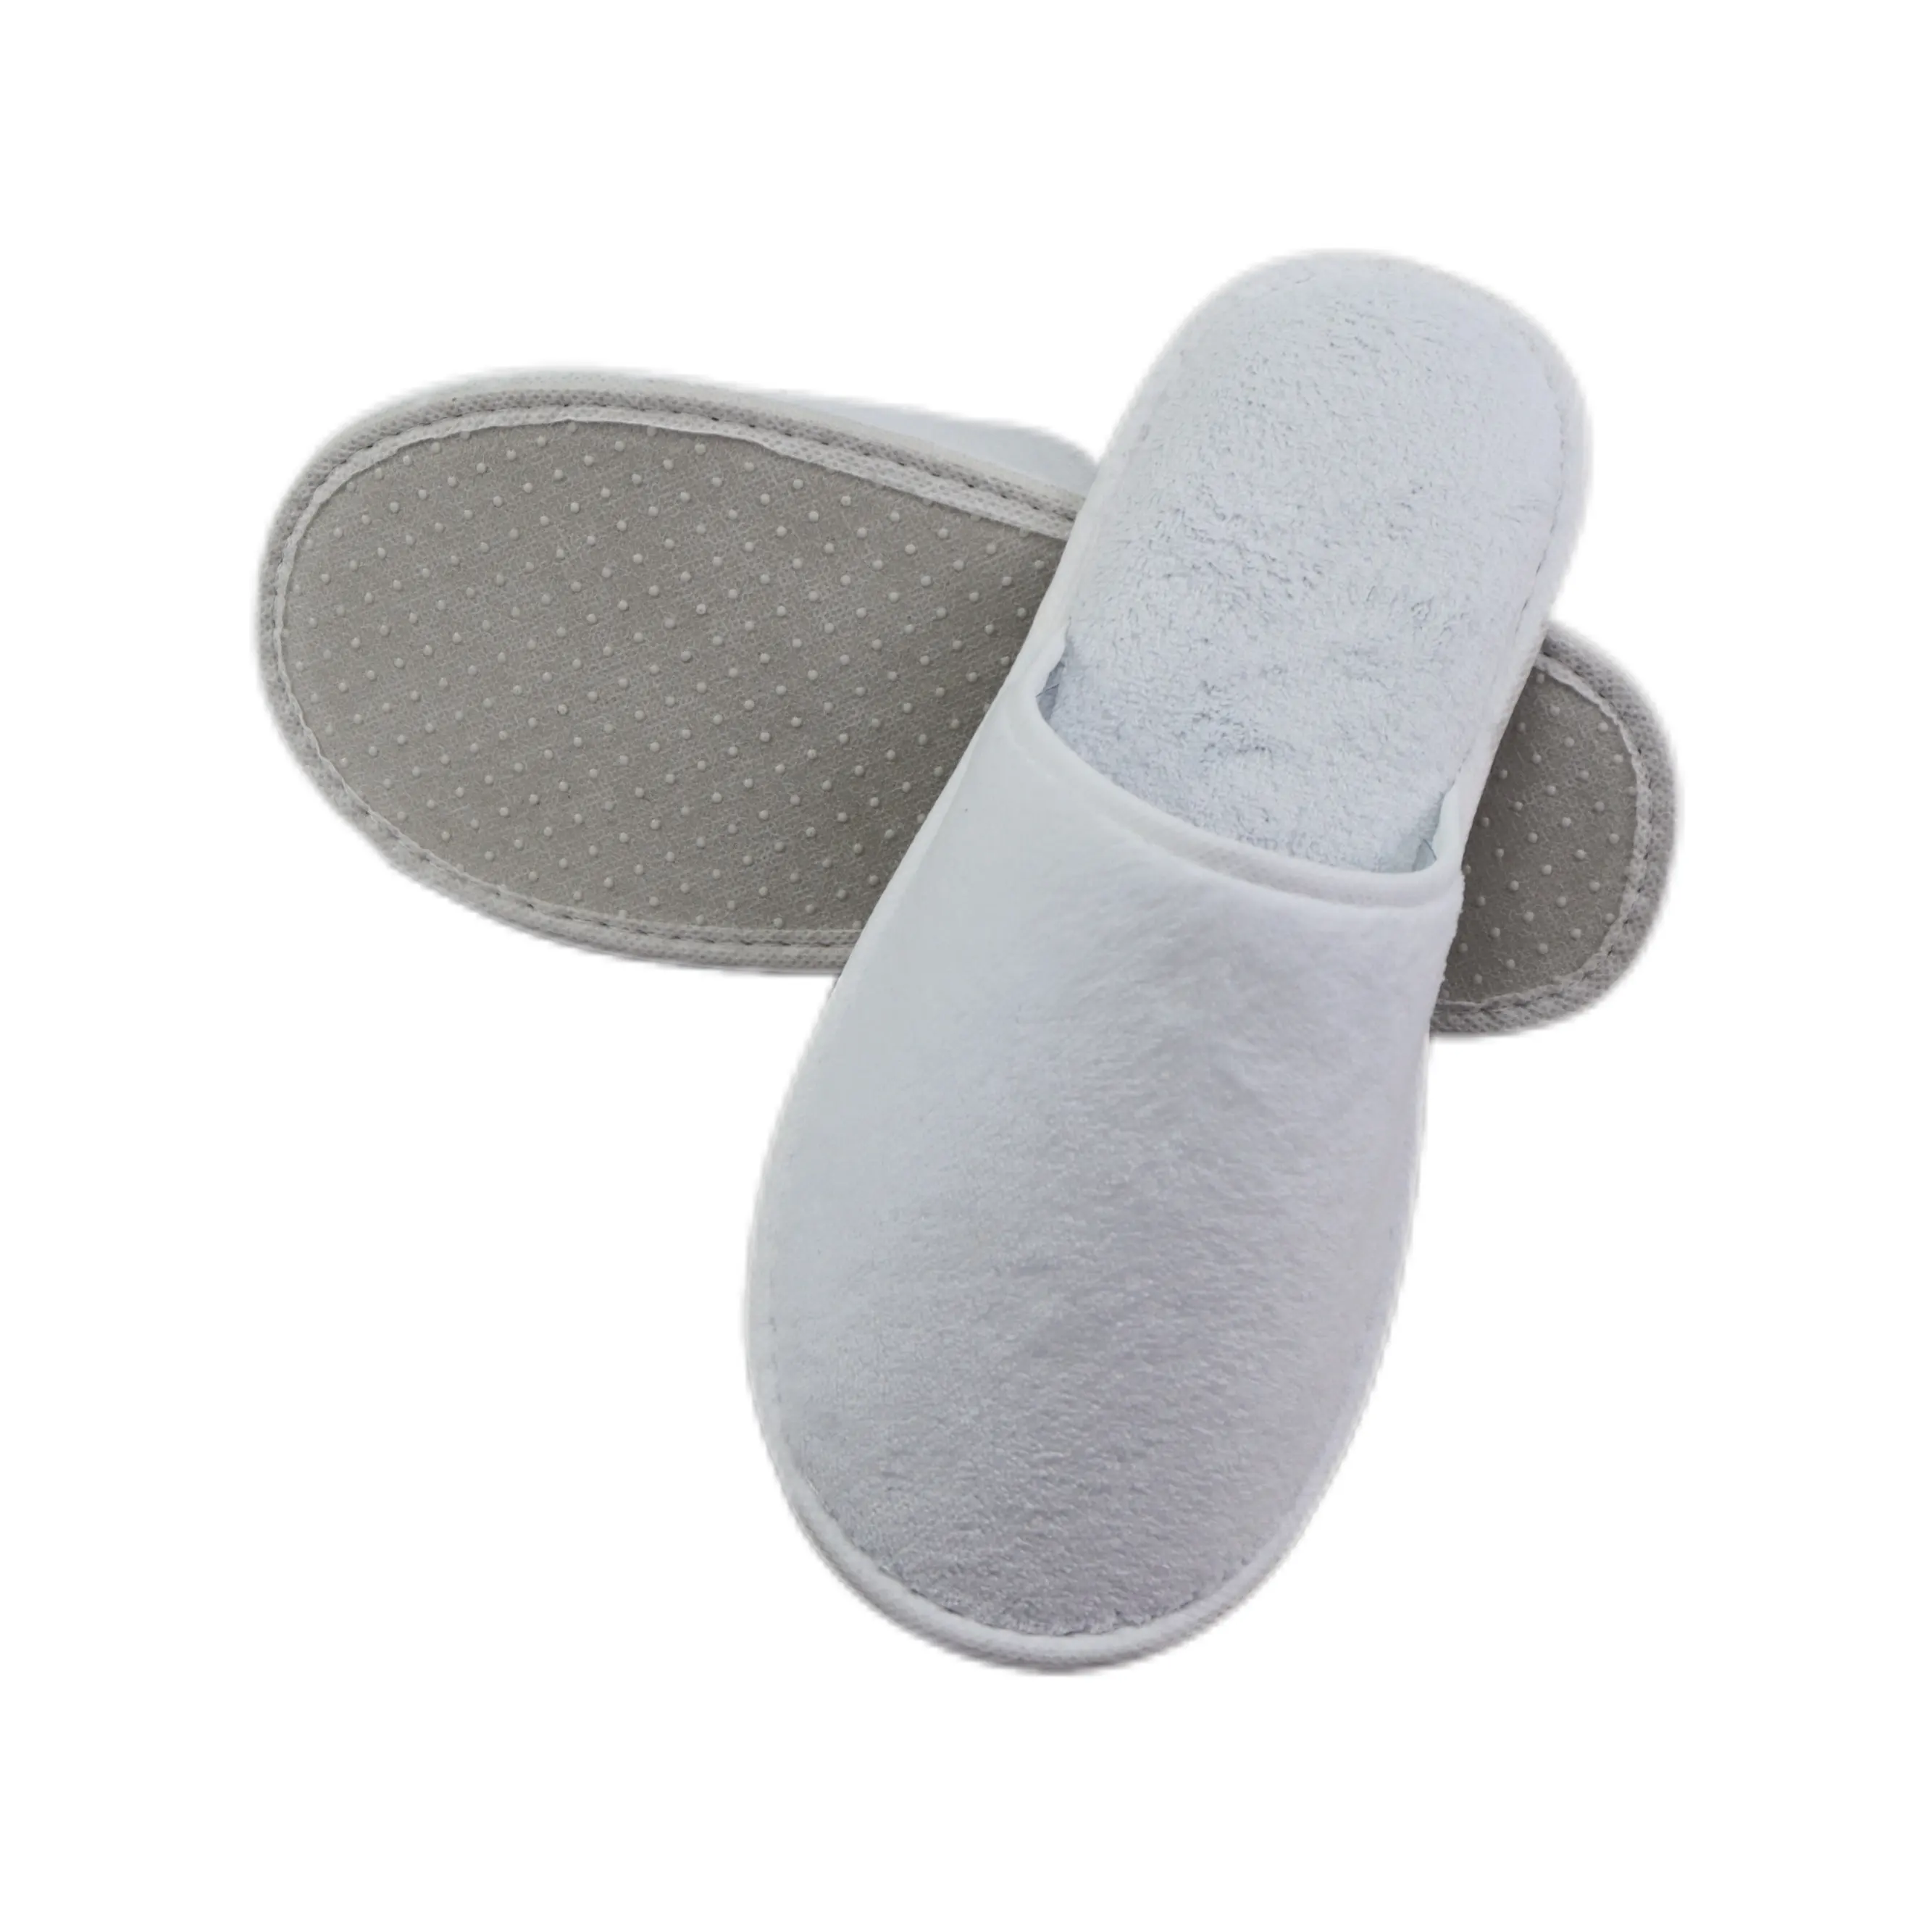 نعال ذات جودة عالية بشعار مخصص أحذية للاستخدام مرة واحدة بيضاء مناسبة للفنادق والسبا للضيوف مصنوعة من المخمل المرجاني